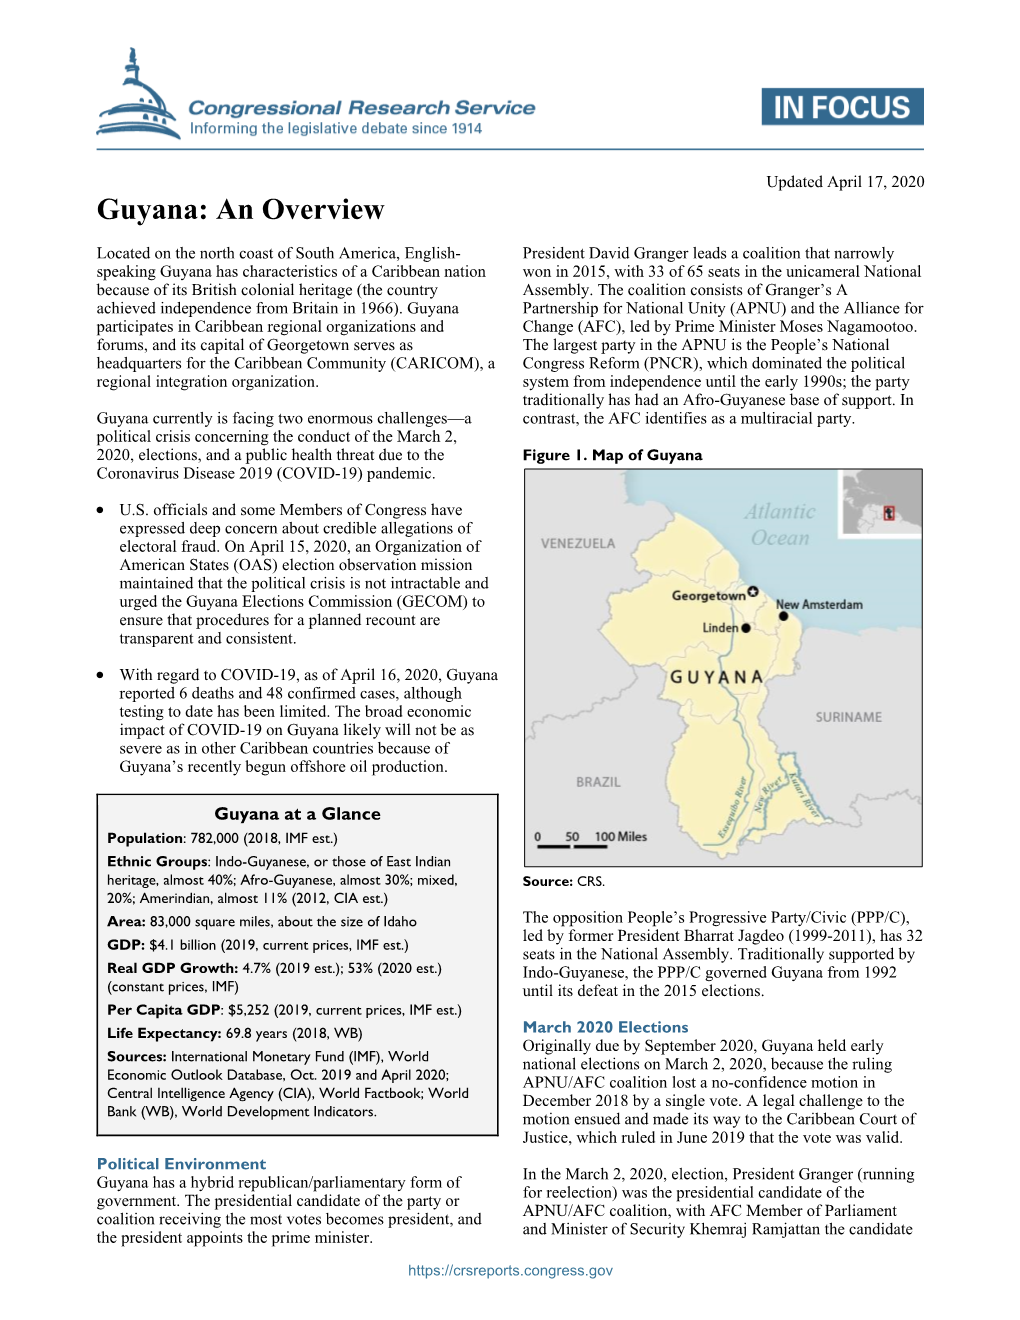 Guyana: an Overview